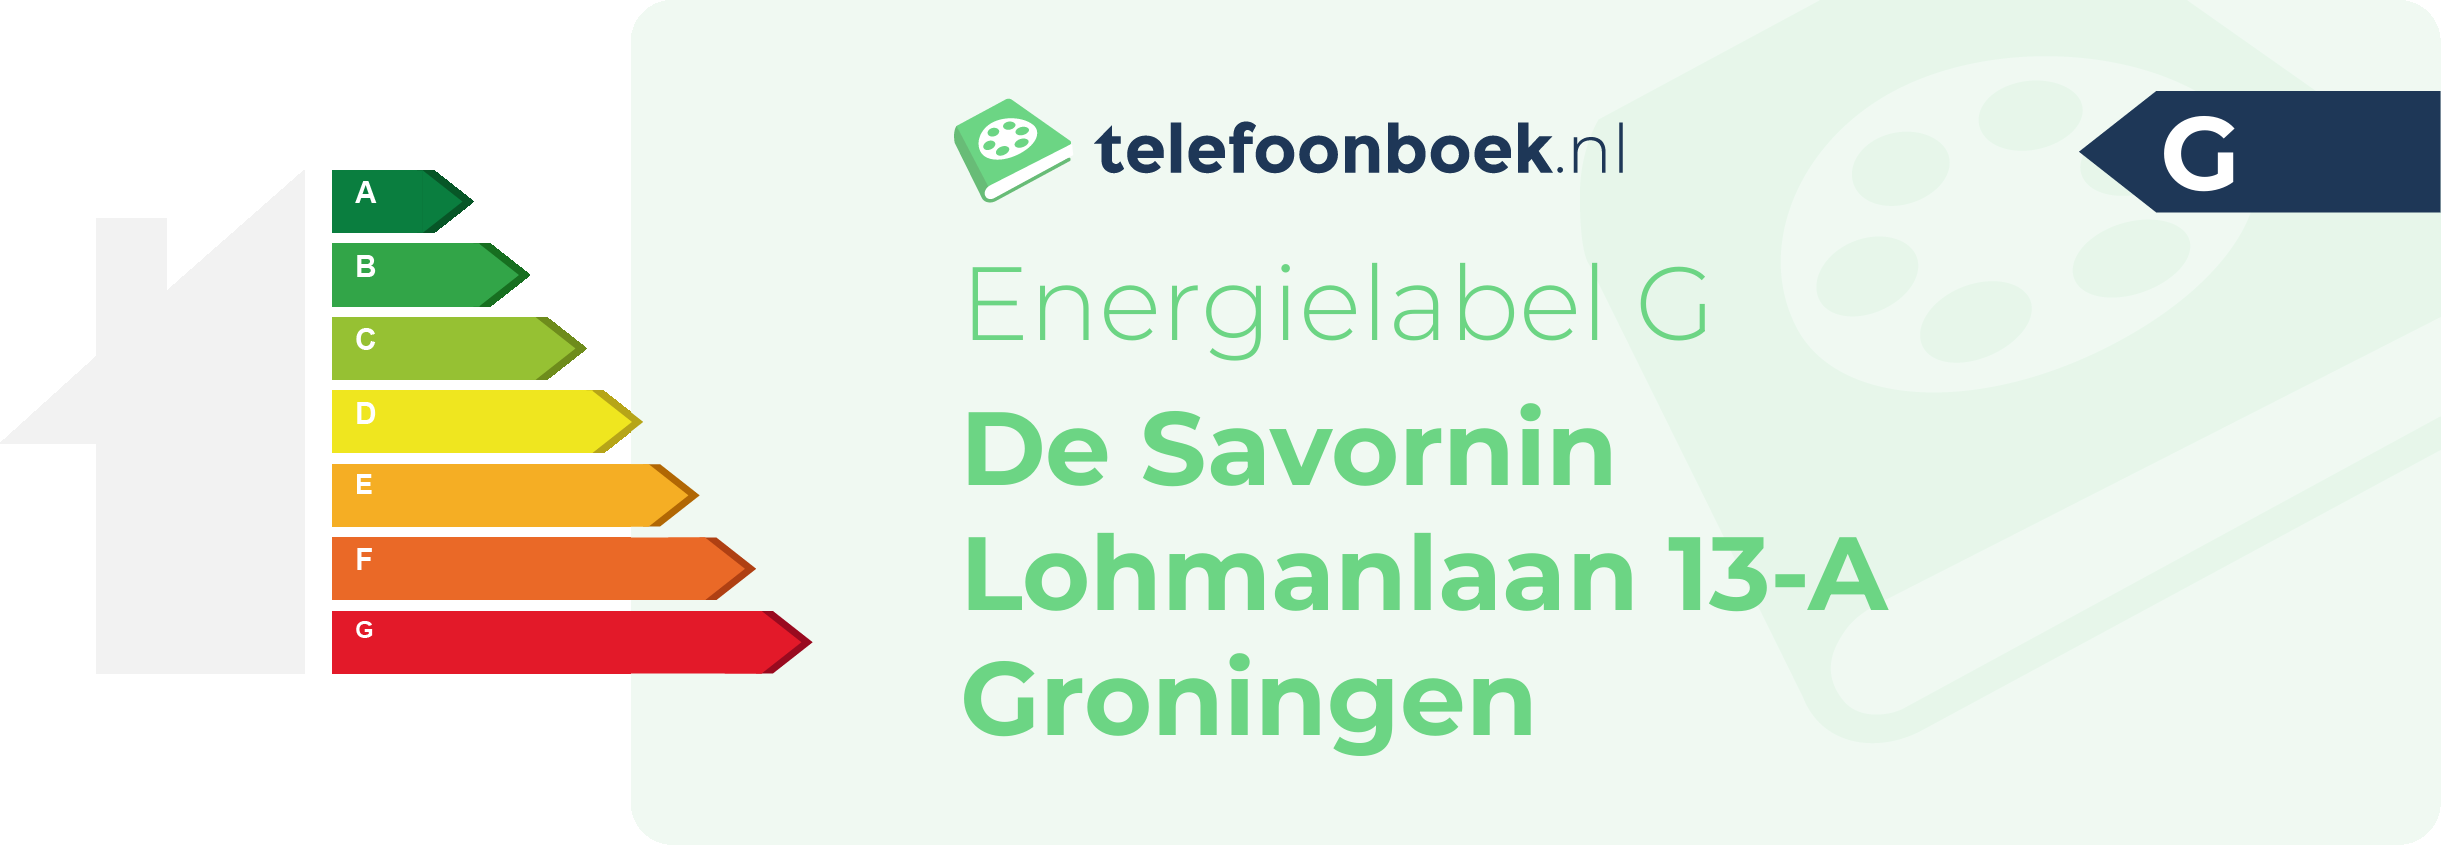 Energielabel De Savornin Lohmanlaan 13-A Groningen